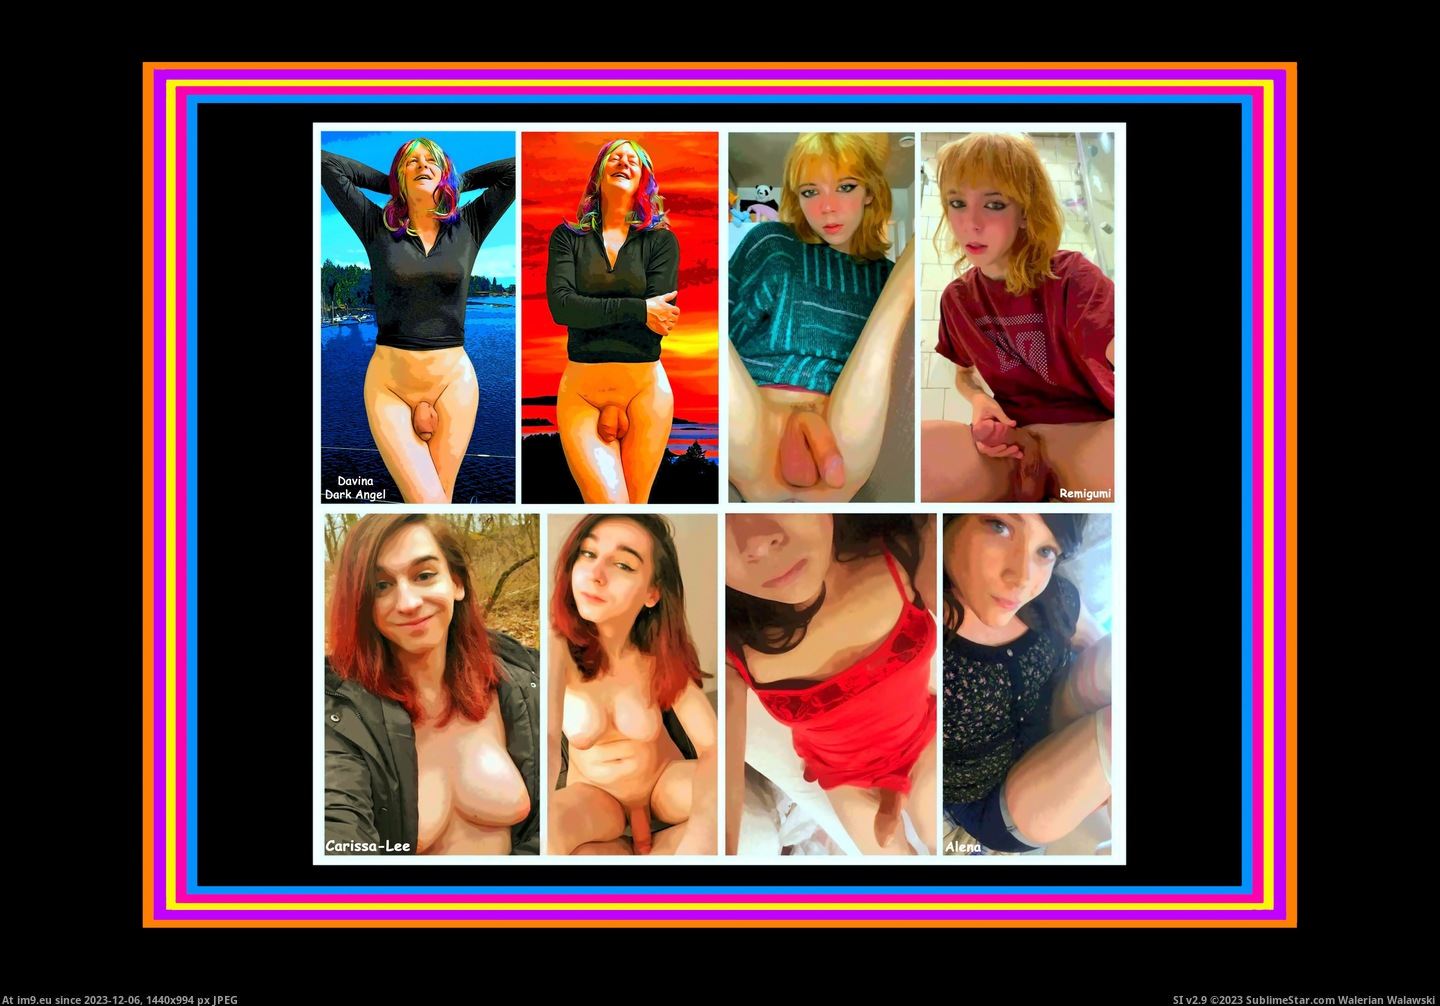 #Amateur #Unclothed #Erotica #Babes Clothedd Unclothed Amateur Erotica Babes 2 Pic. (Image of album Instant Upload))